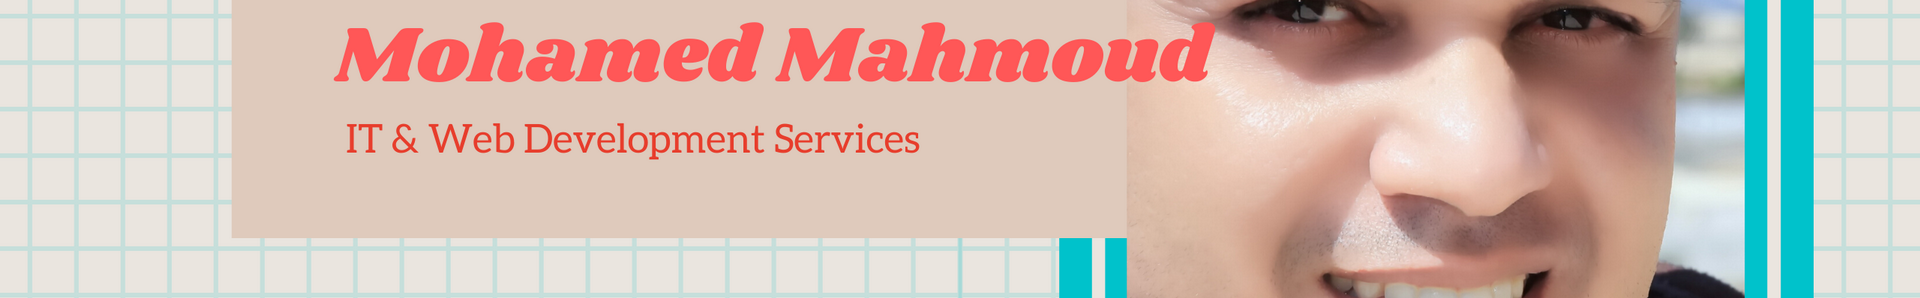 Mohamed Mahmoud's profile banner